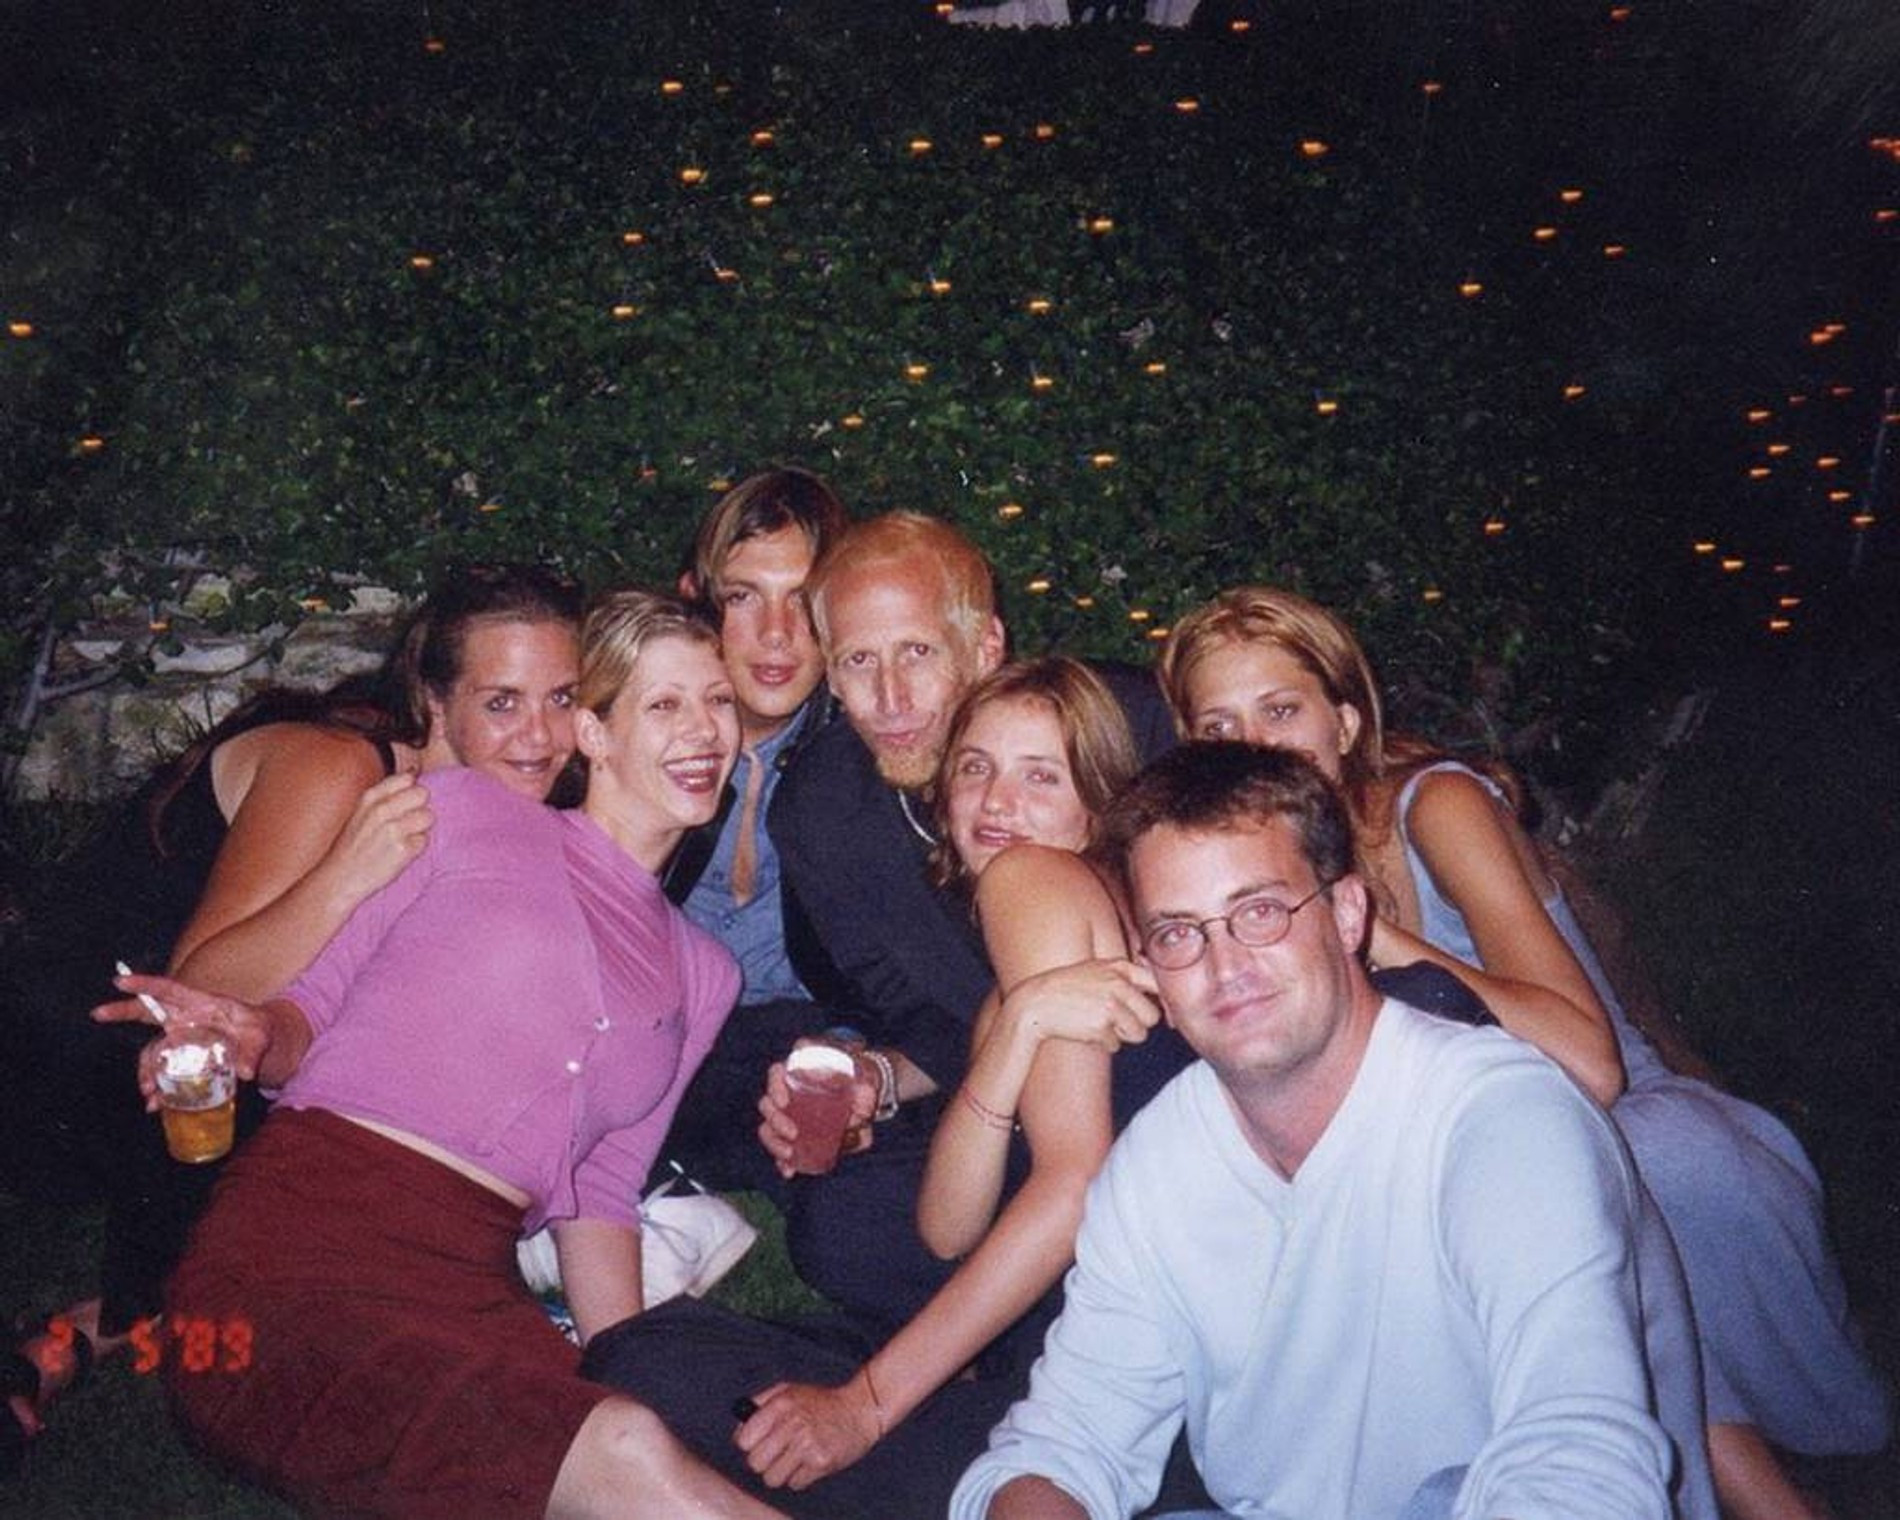 Мэттью Перри и Кэмерон Диас на вечеринке с друзьями. Фото: соцсети